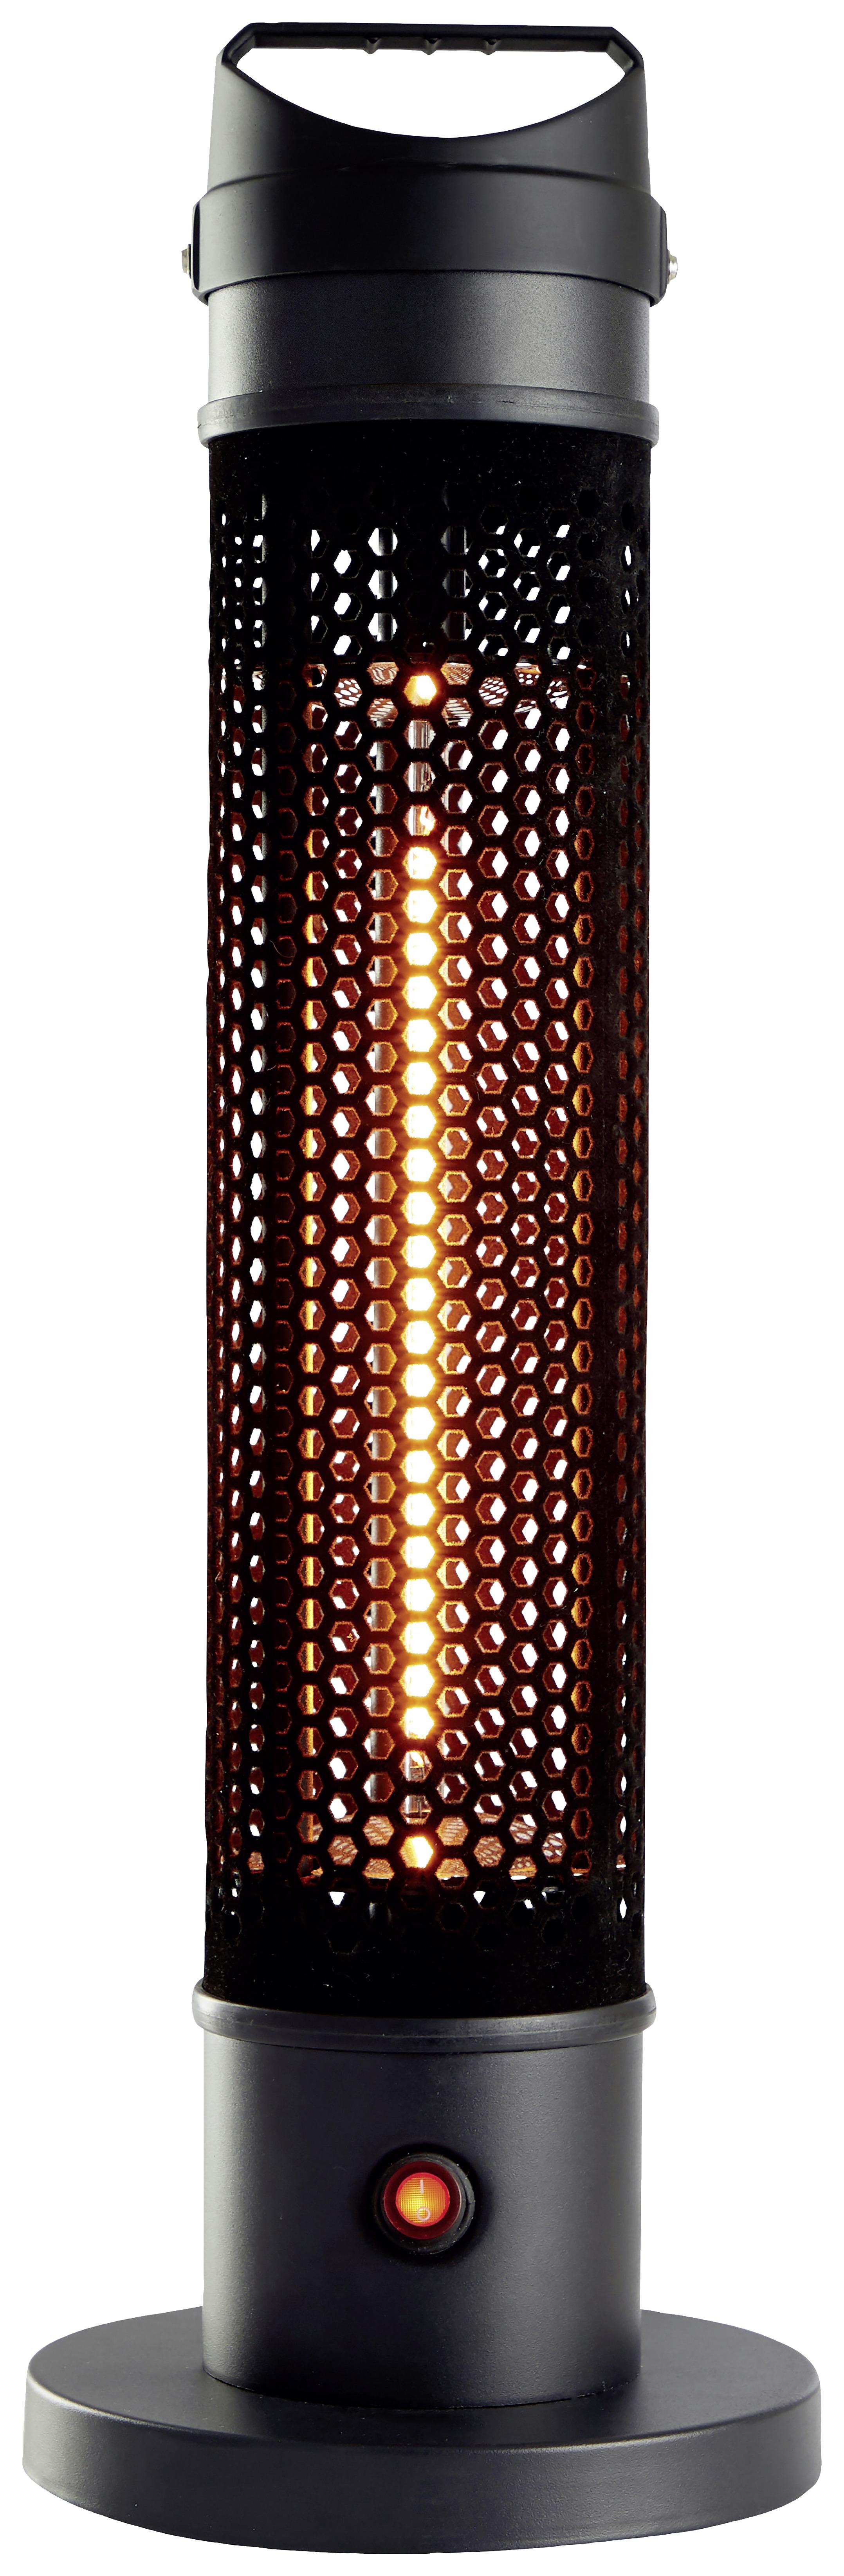 Terrassenstrahler Alpina Carbon 800W - Schwarz, MODERN, Kunststoff (20/61cm) - Alpina 5849